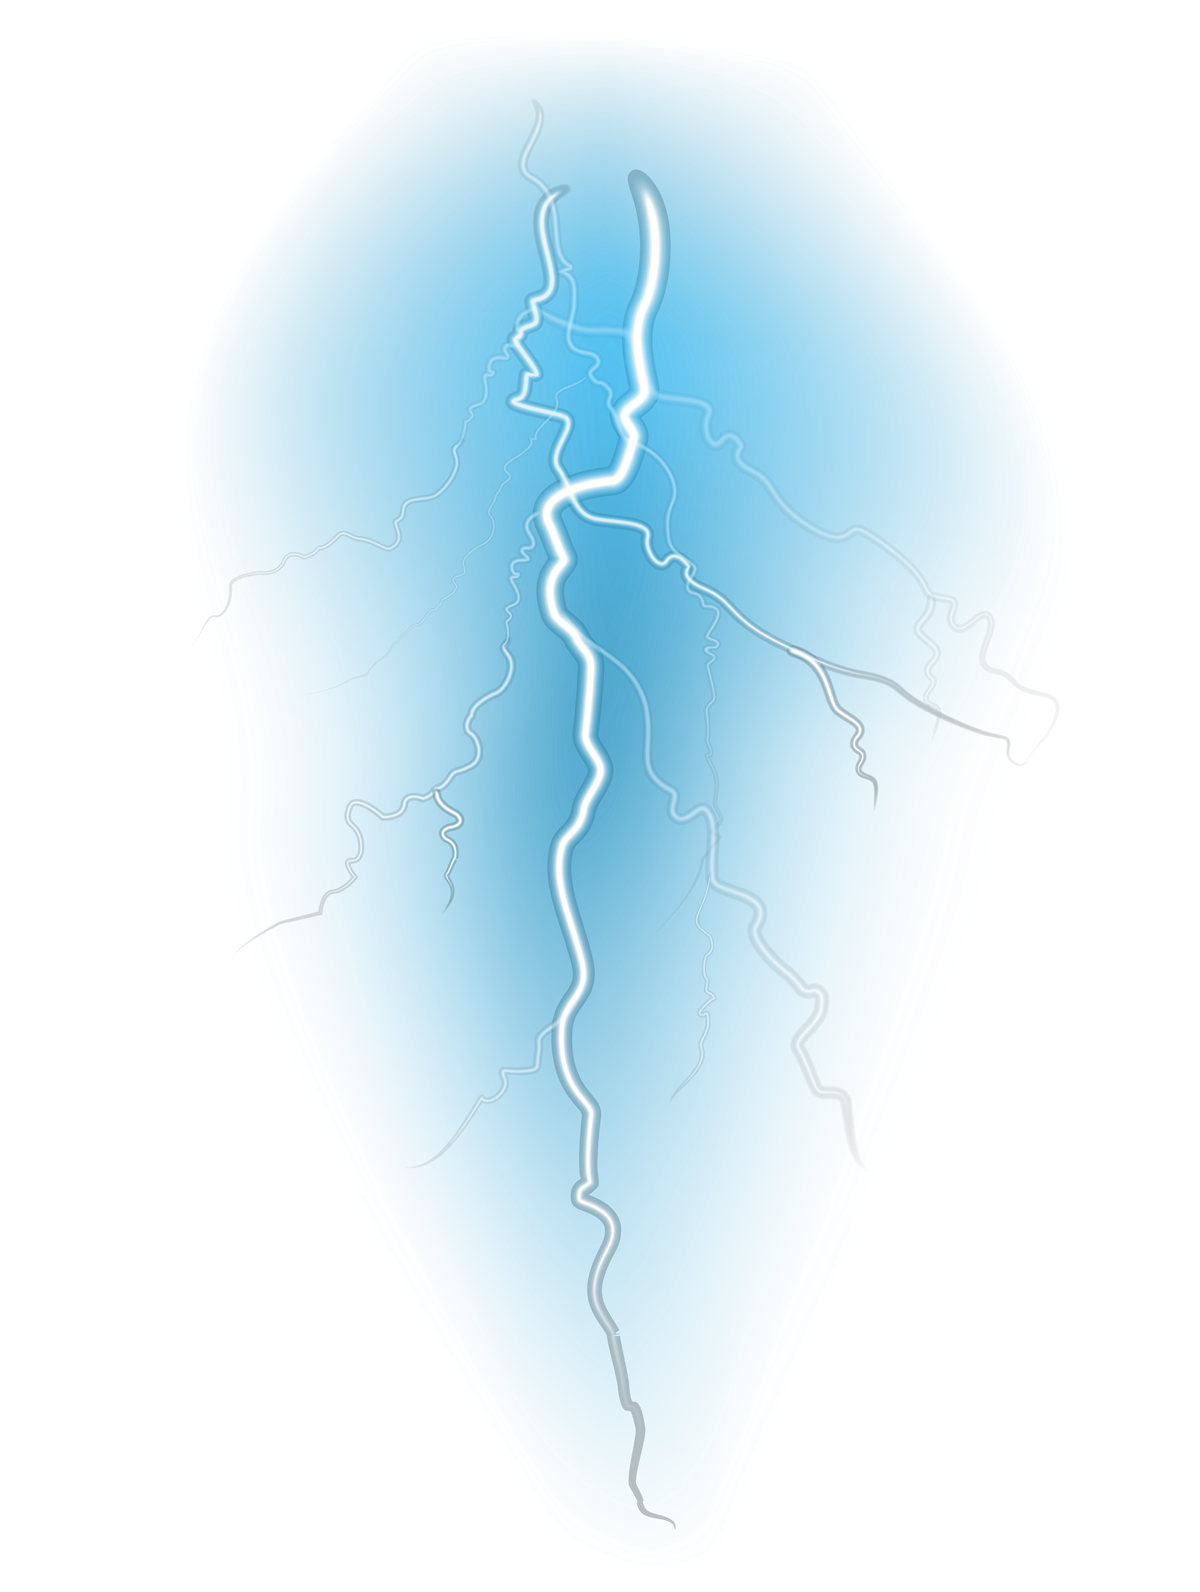 Lightning Strike PNG Image Background